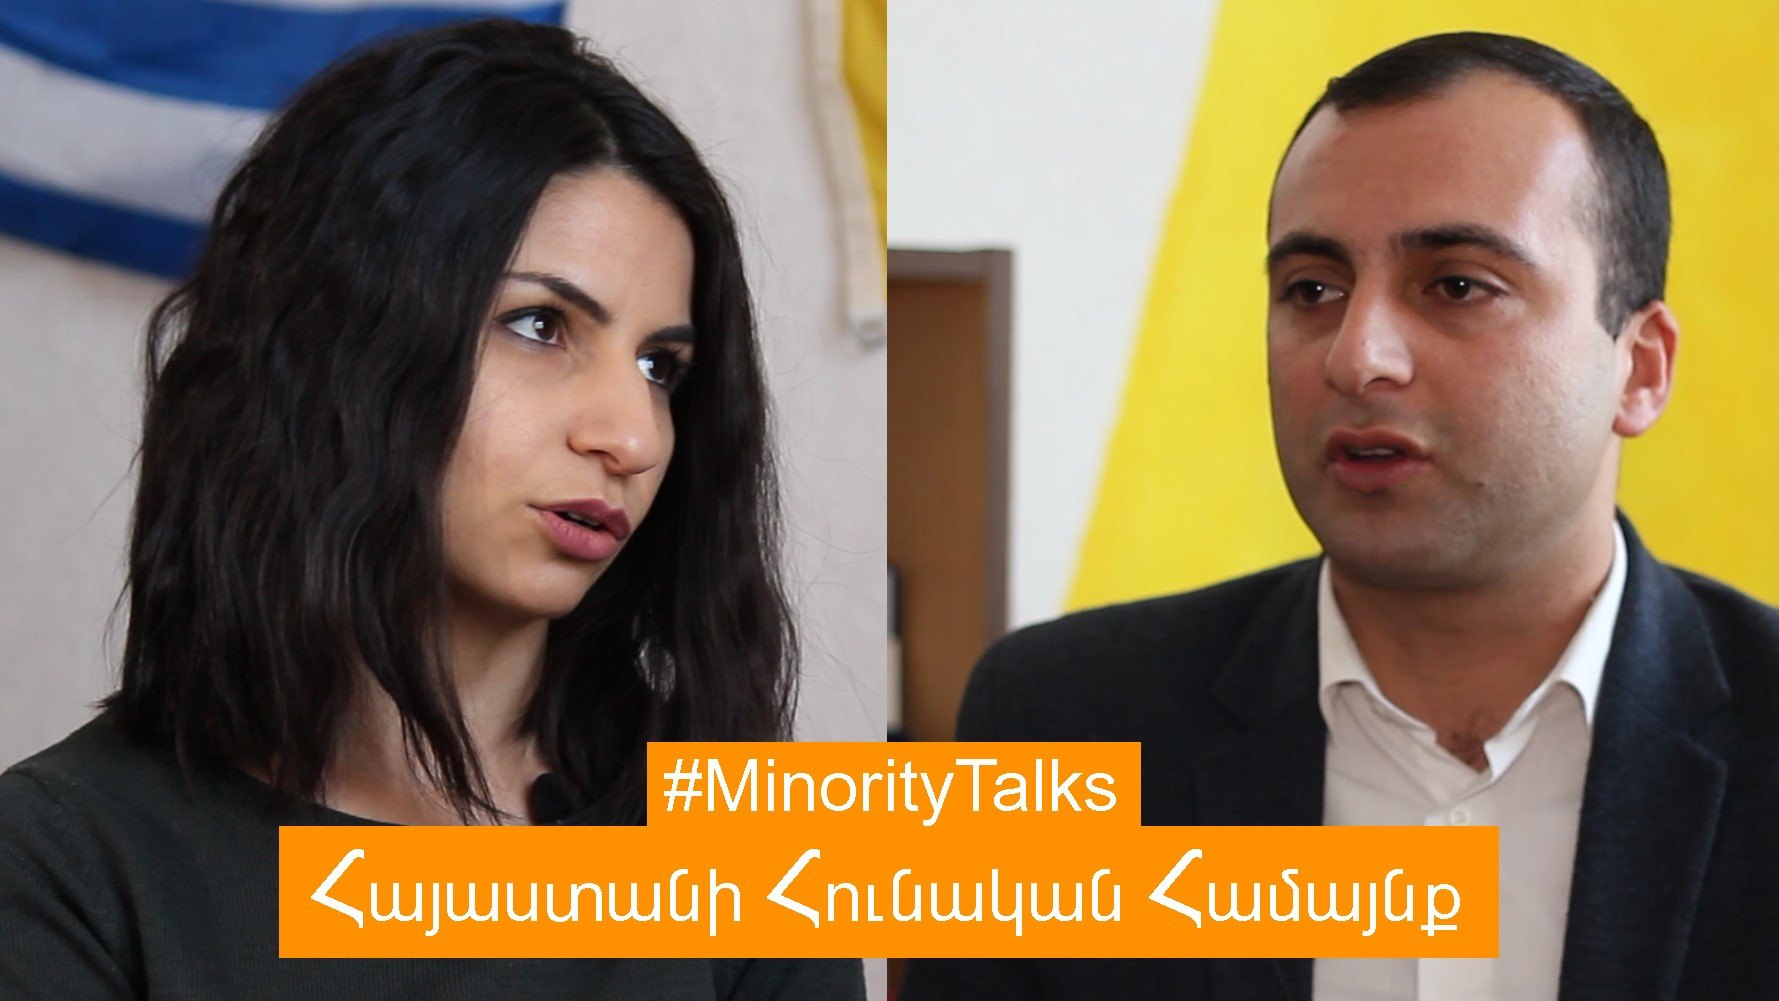 Minority Talks